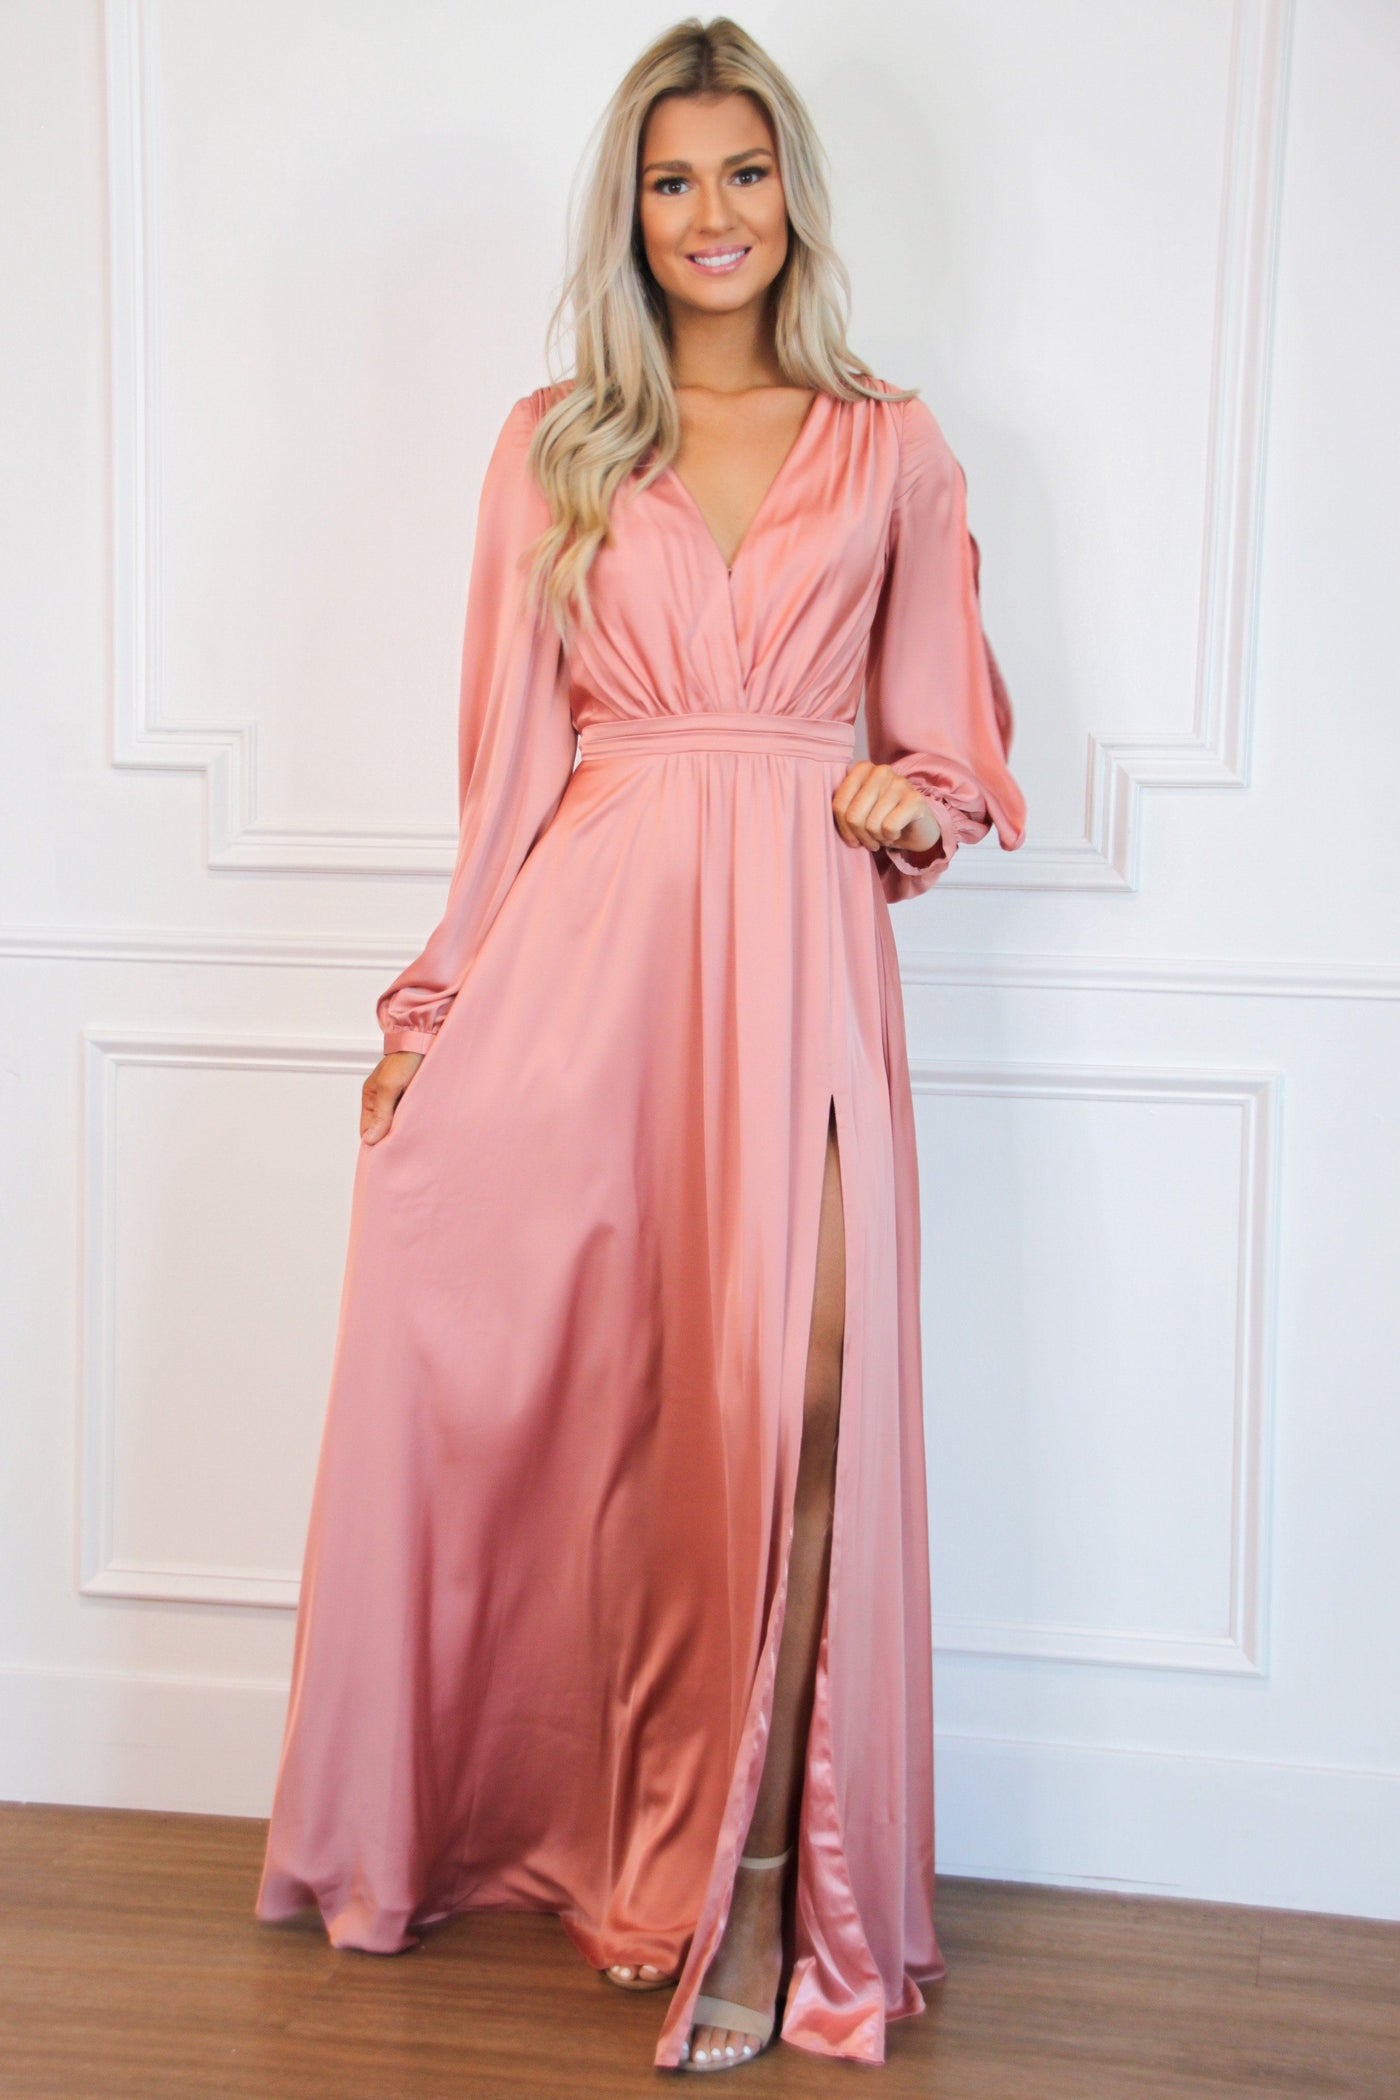 Scarlett Long Sleeve Slit Formal Dress: Spring Rose - Bella and Bloom Boutique